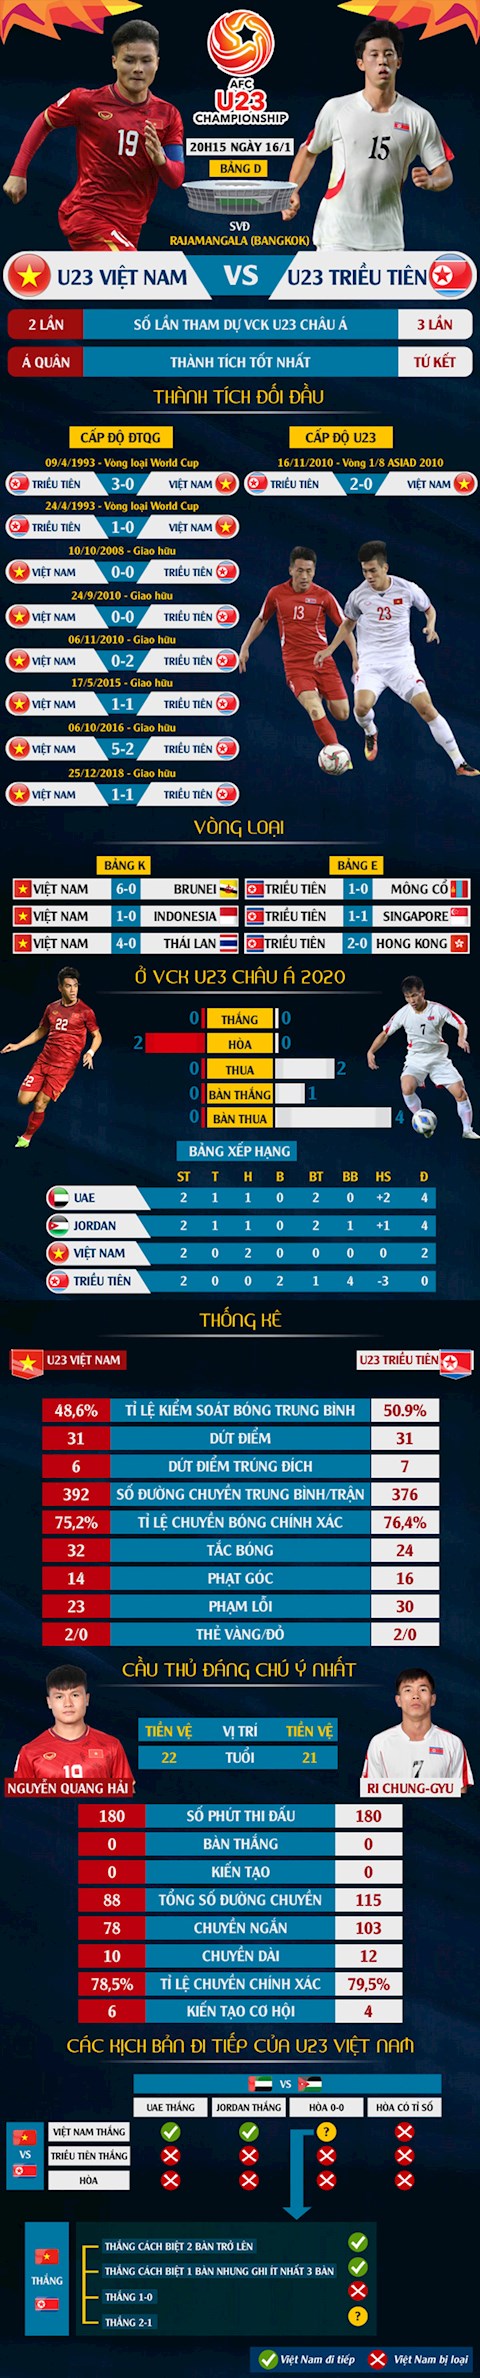 U23 Việt Nam vs U23 Triều Tiên - So sánh thống kê trước trận hình ảnh